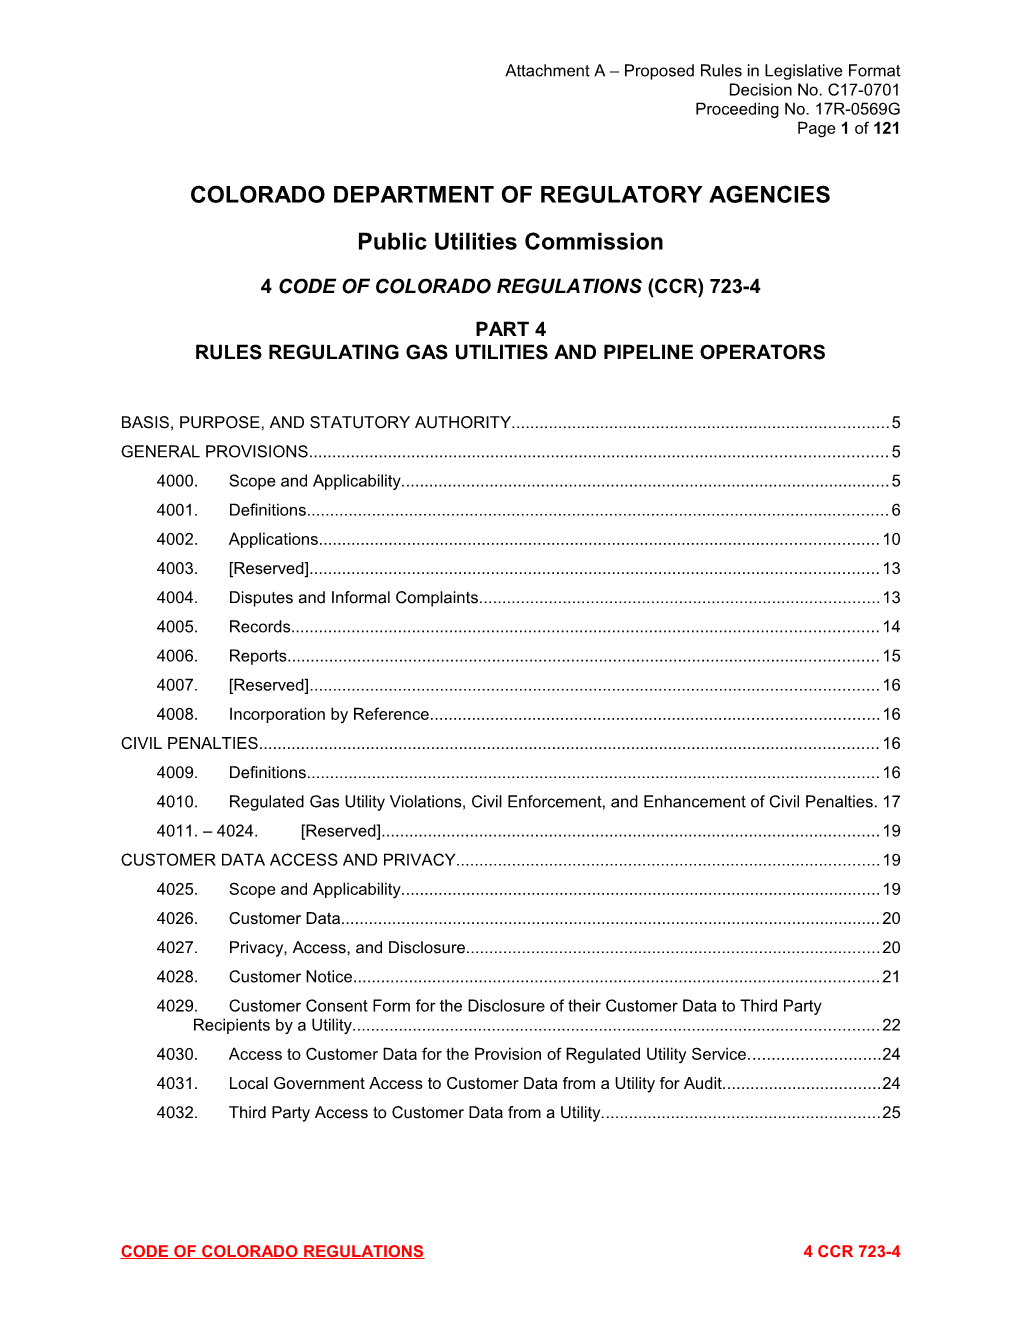 Colorado Department of Regulatory Agencies s7